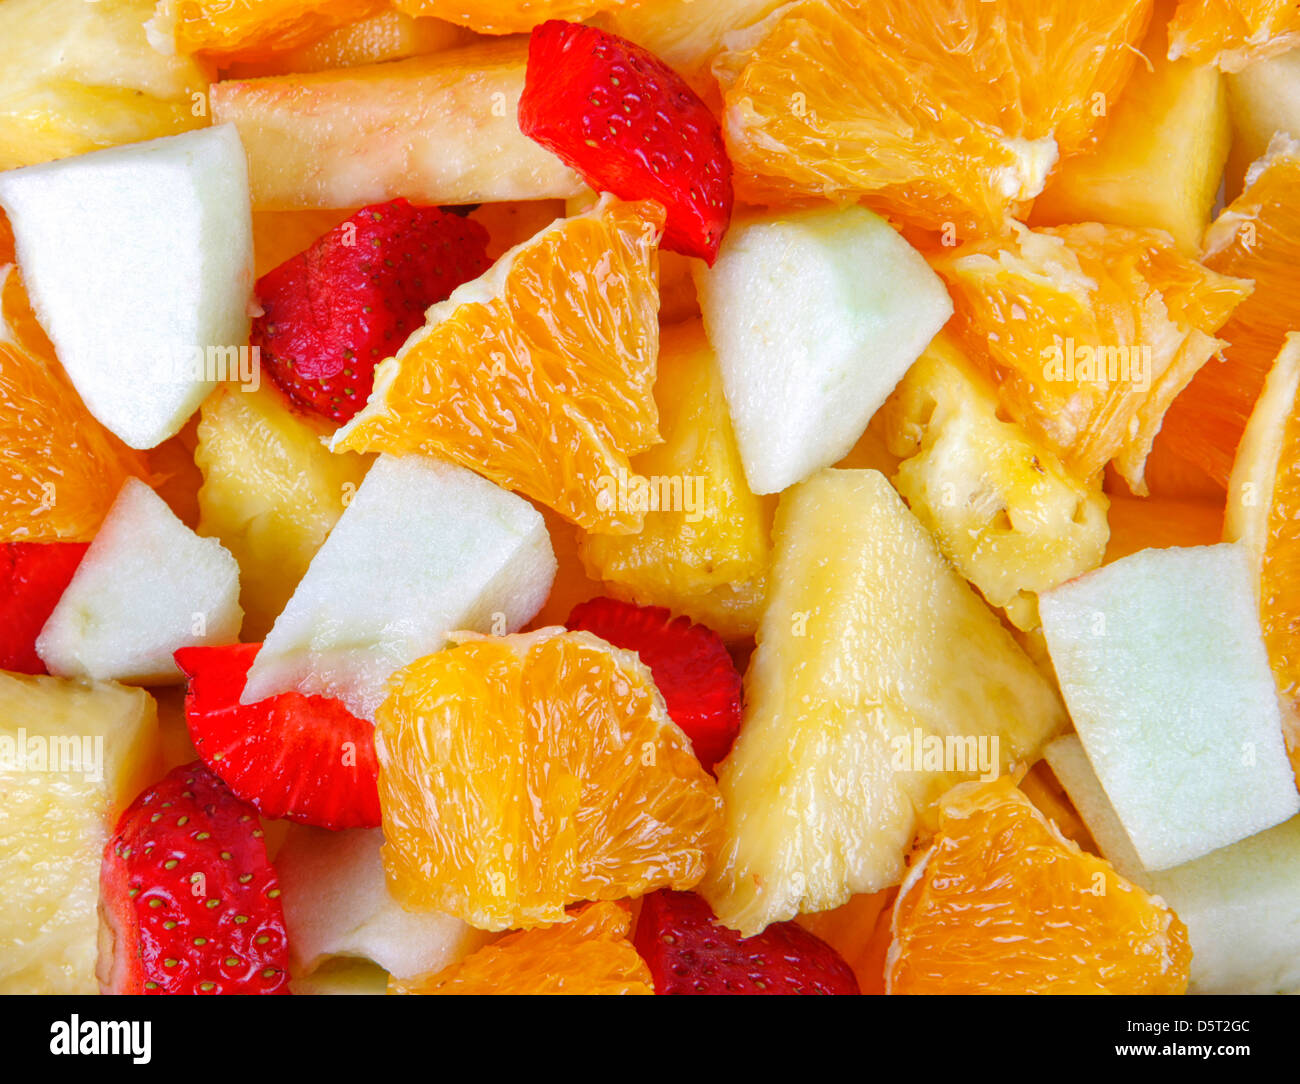 Mixed salad of fresh fruit Stock Photo